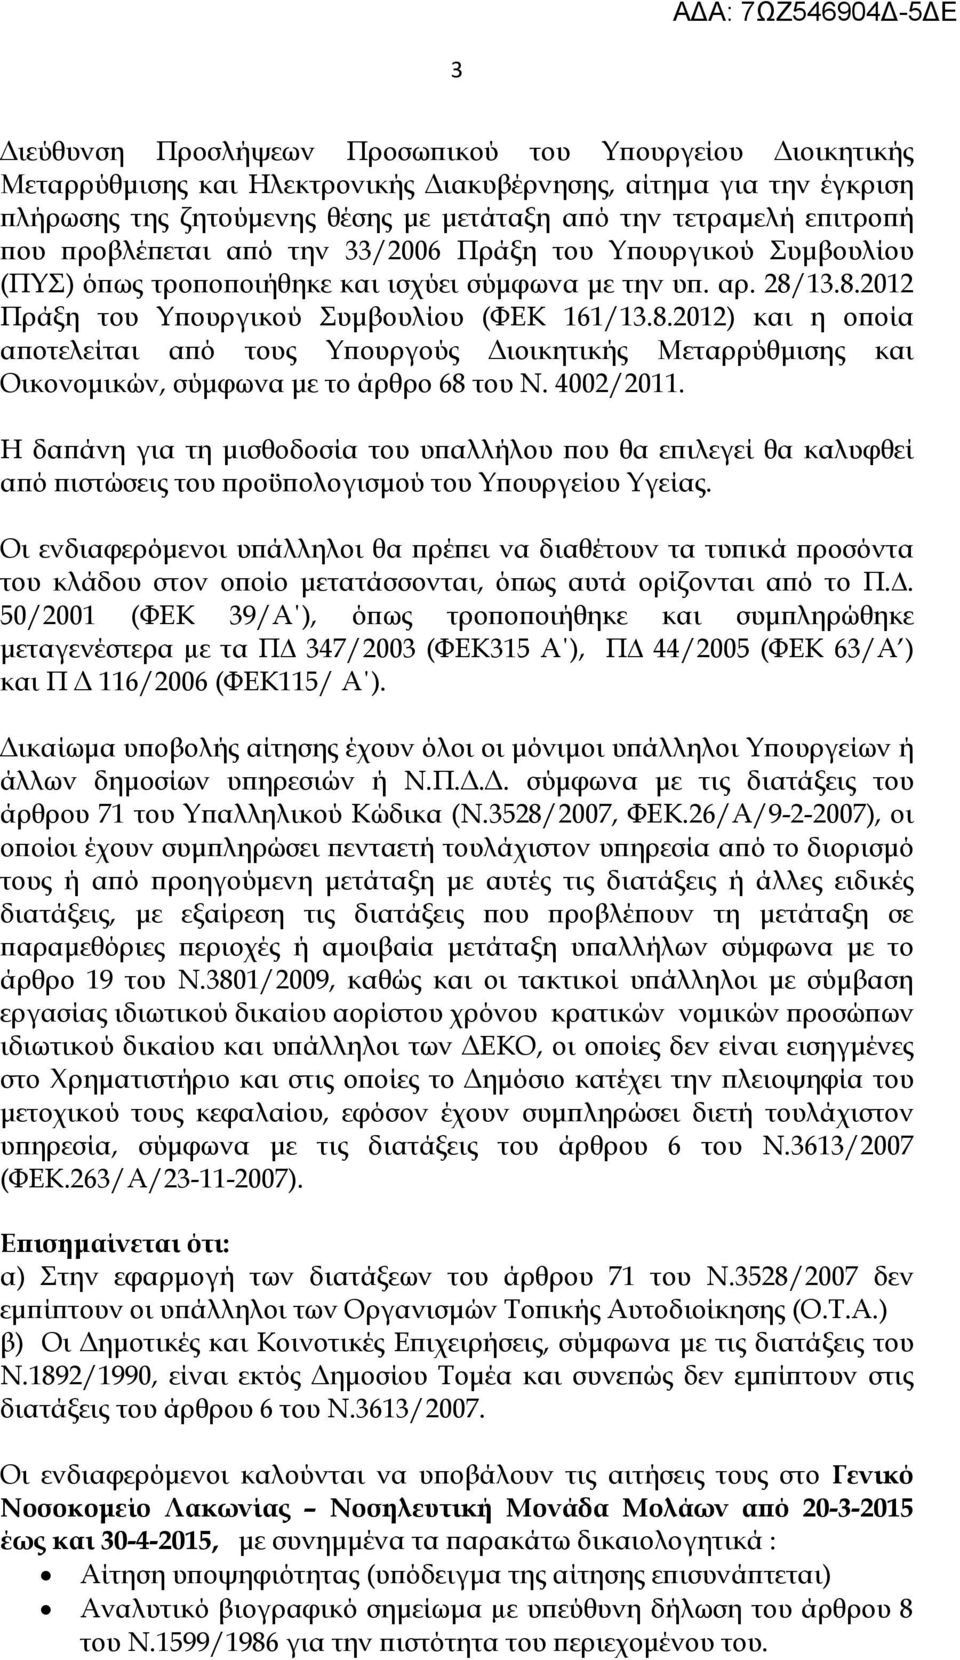 13.8.2012 Πράξη του Υ ουργικού Συµβουλίου (ΦΕΚ 161/13.8.2012) και η ο οία α οτελείται α ό τους Υ ουργούς ιοικητικής Μεταρρύθµισης και Οικονοµικών, σύµφωνα µε το άρθρο 68 του Ν. 4002/2011.